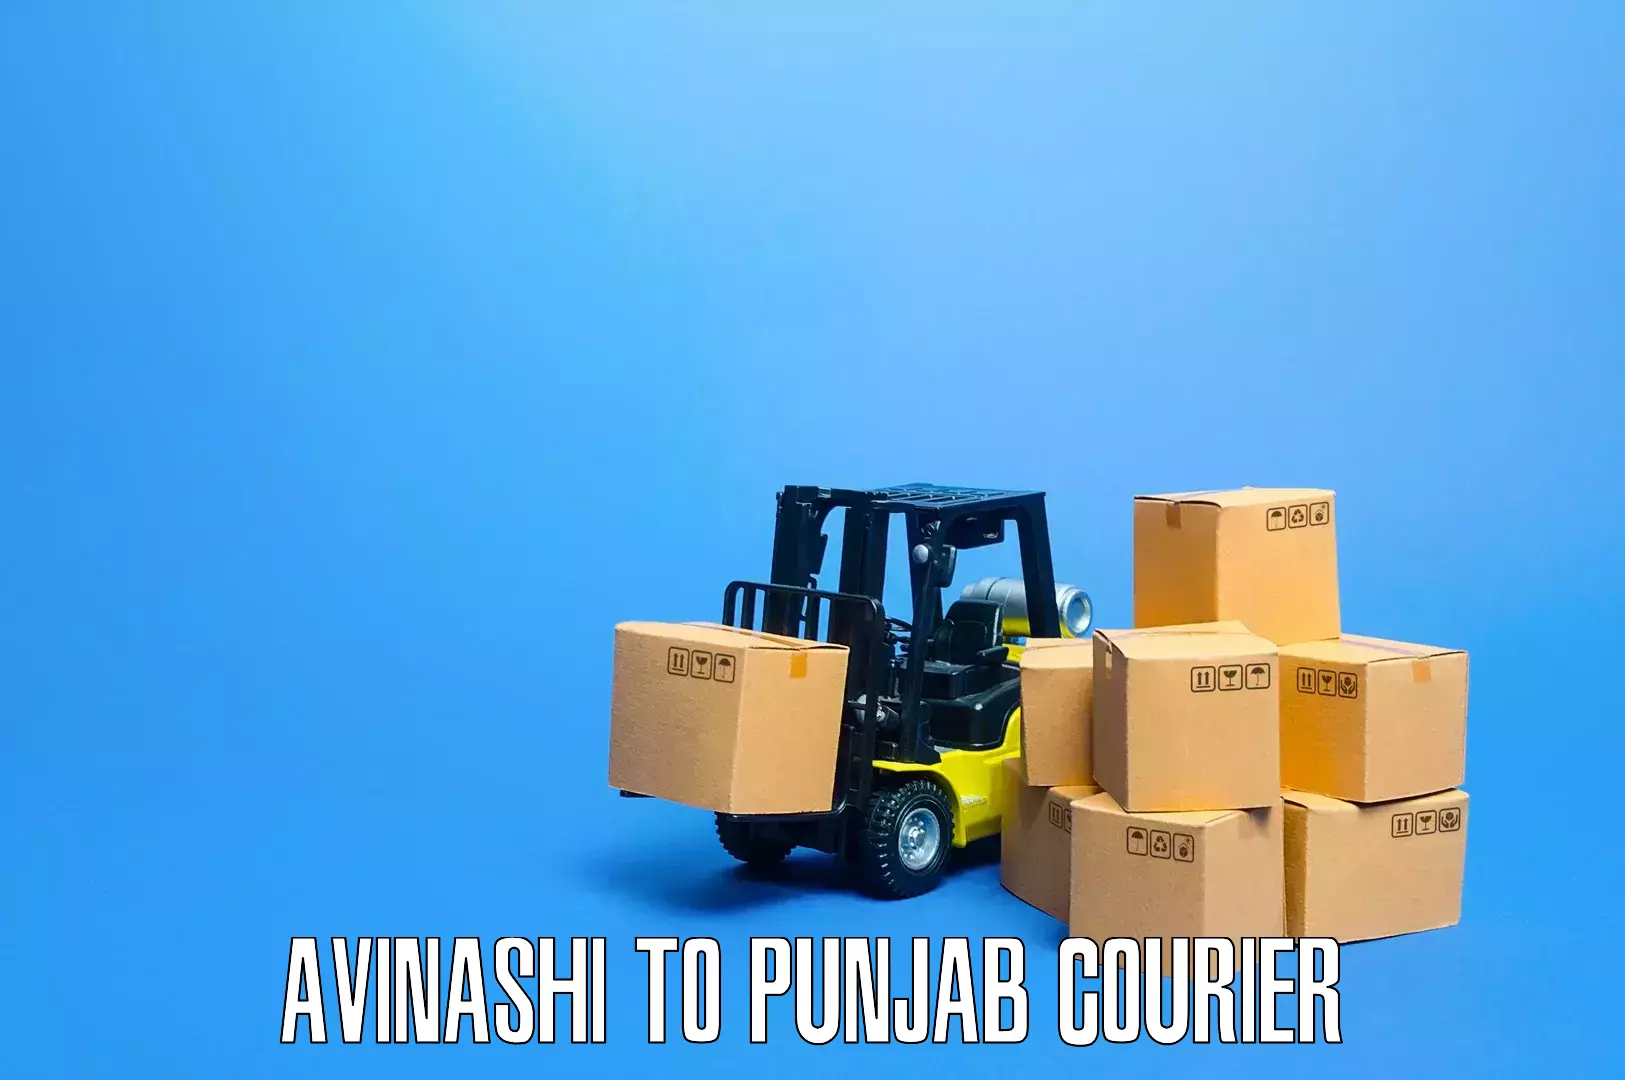 Furniture moving experts Avinashi to Punjab